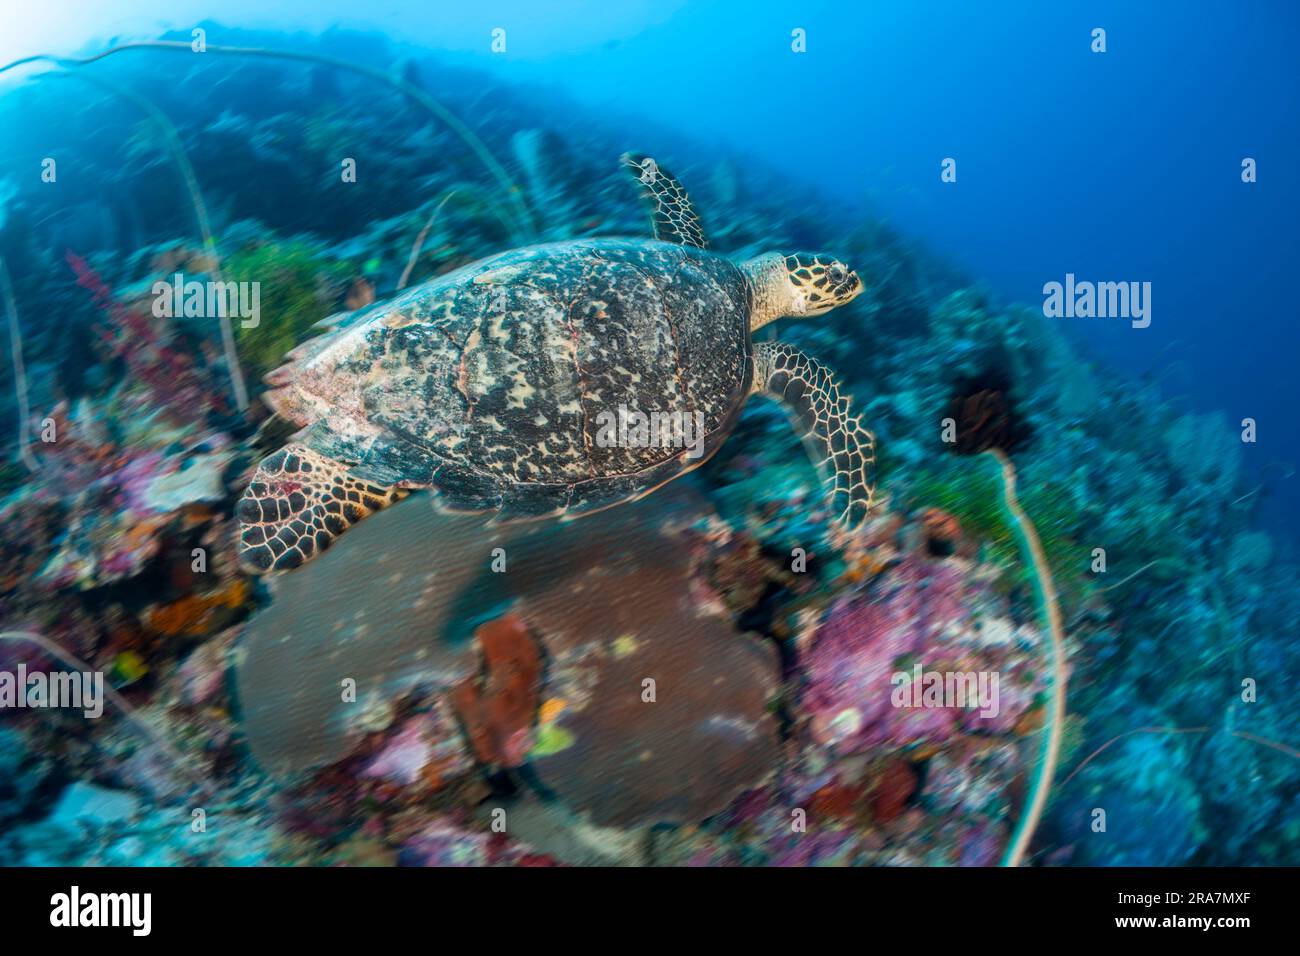 Un'immagine sfocata del movimento di una tartaruga falco, Eretmochelys imbricata, una specie in via di estinzione, su una barriera corallina indonesiana. Foto Stock